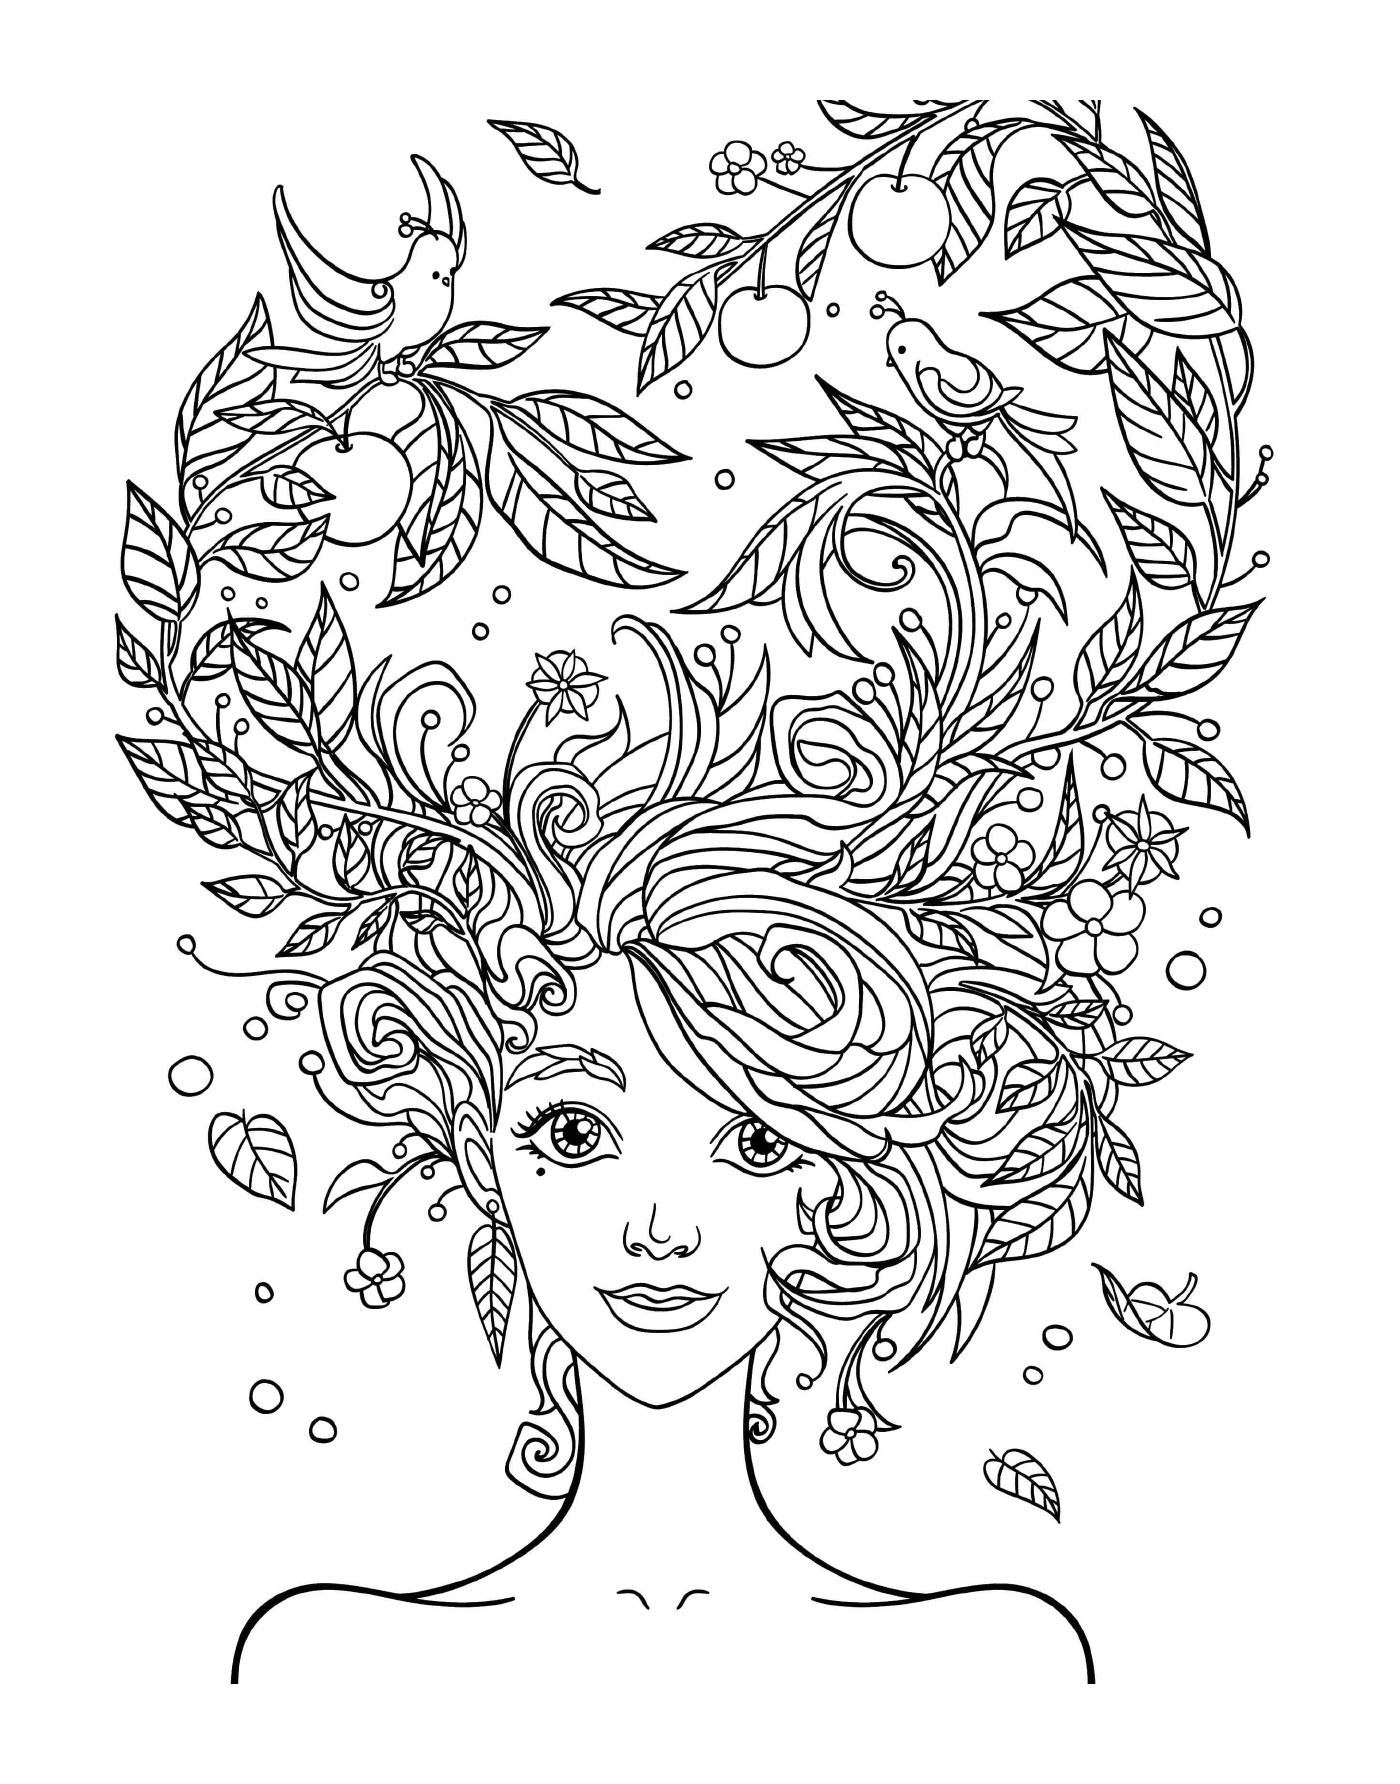  La testa di una donna con i fiori tra i capelli 